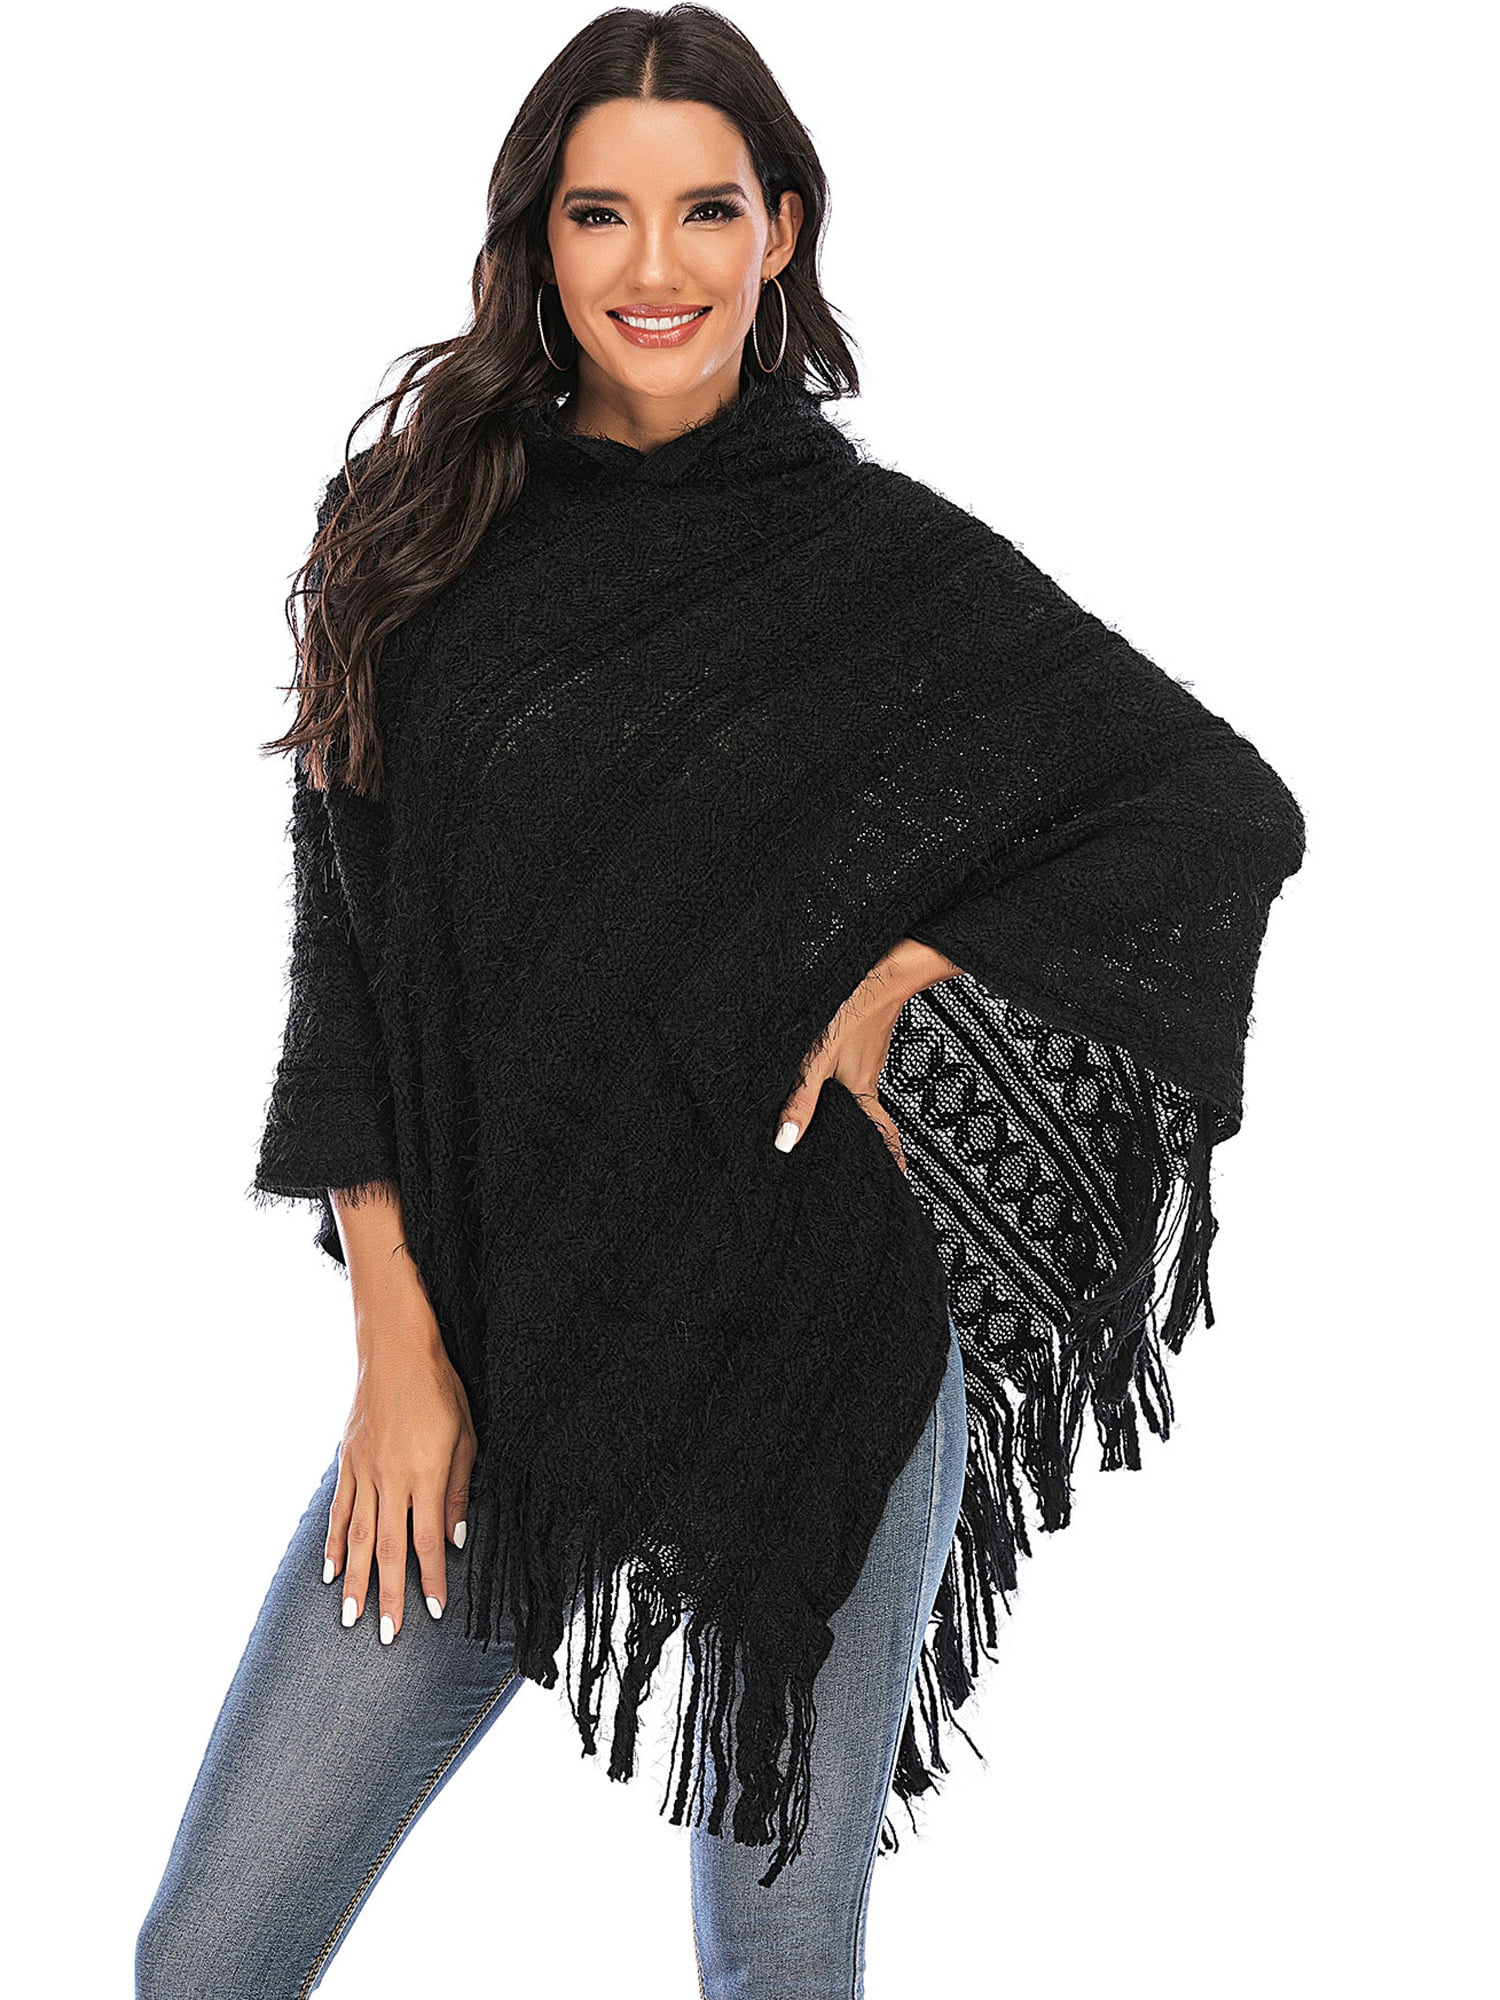 Women Ladies Tassel Cloak Hood Warm Sweater Knit Top Poncho Cape Coat Outwear US